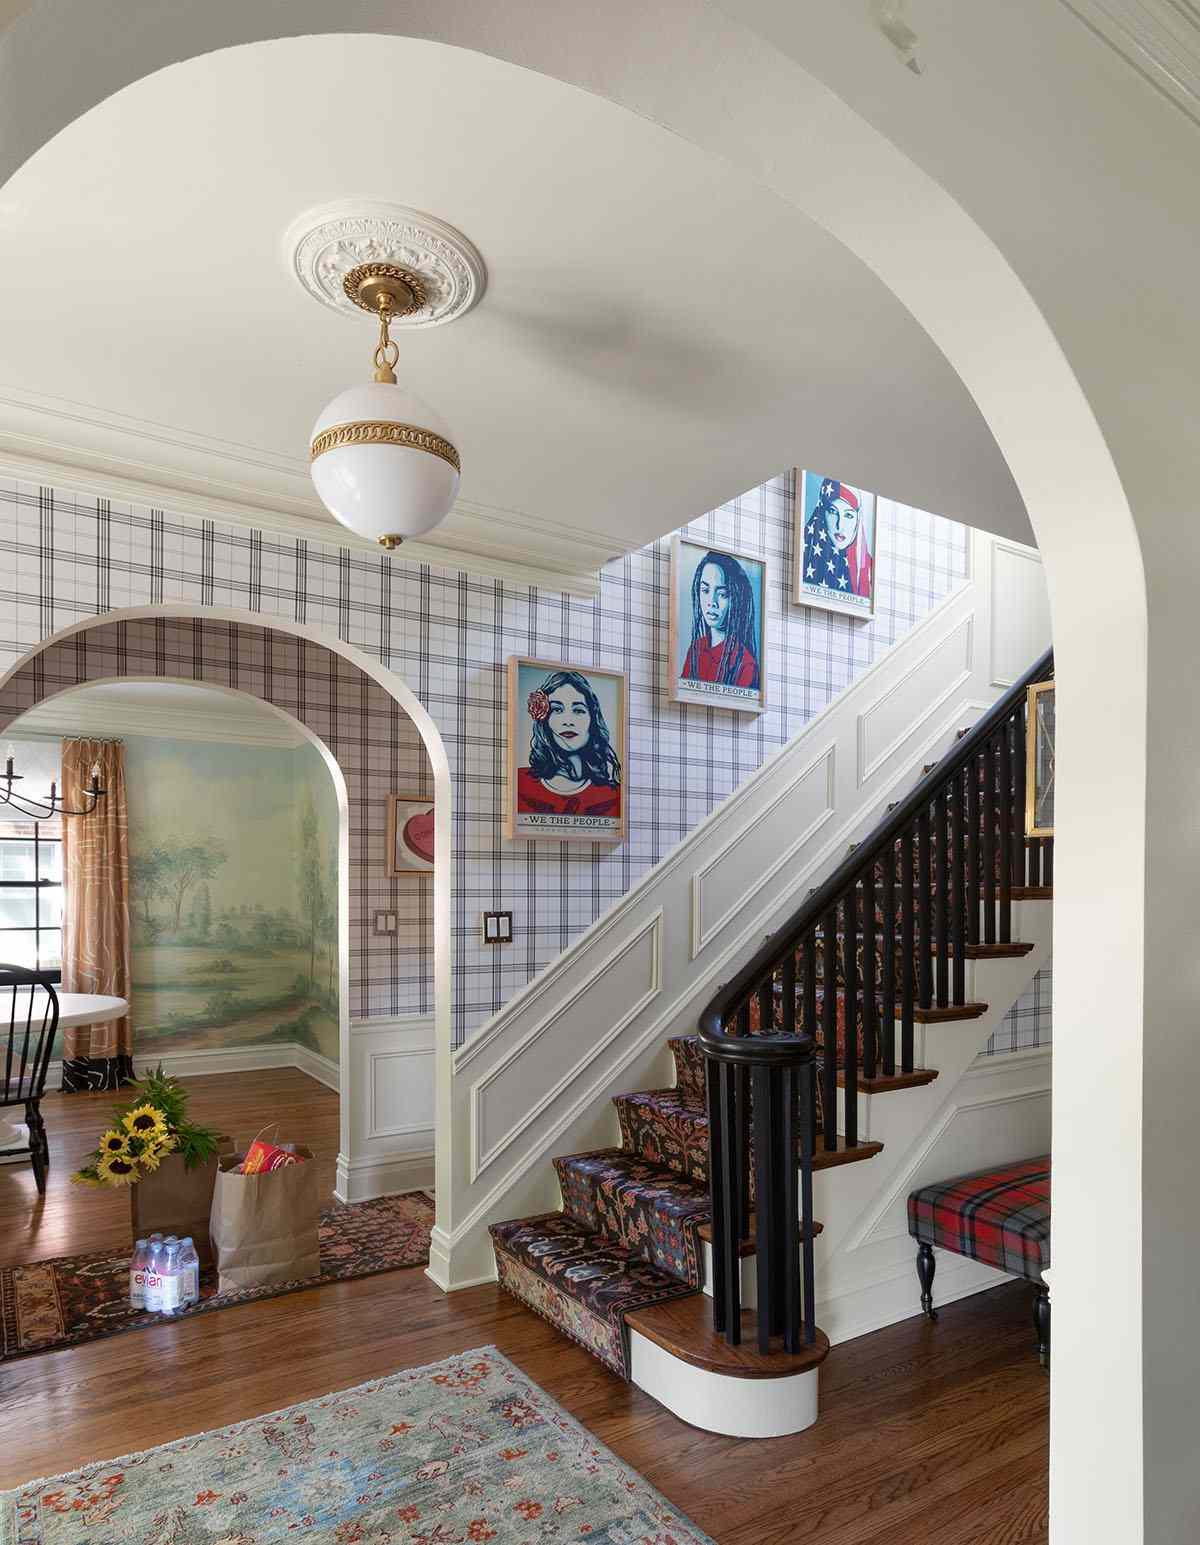 Imagens de arte pop vermelha e azul ao longo da escada